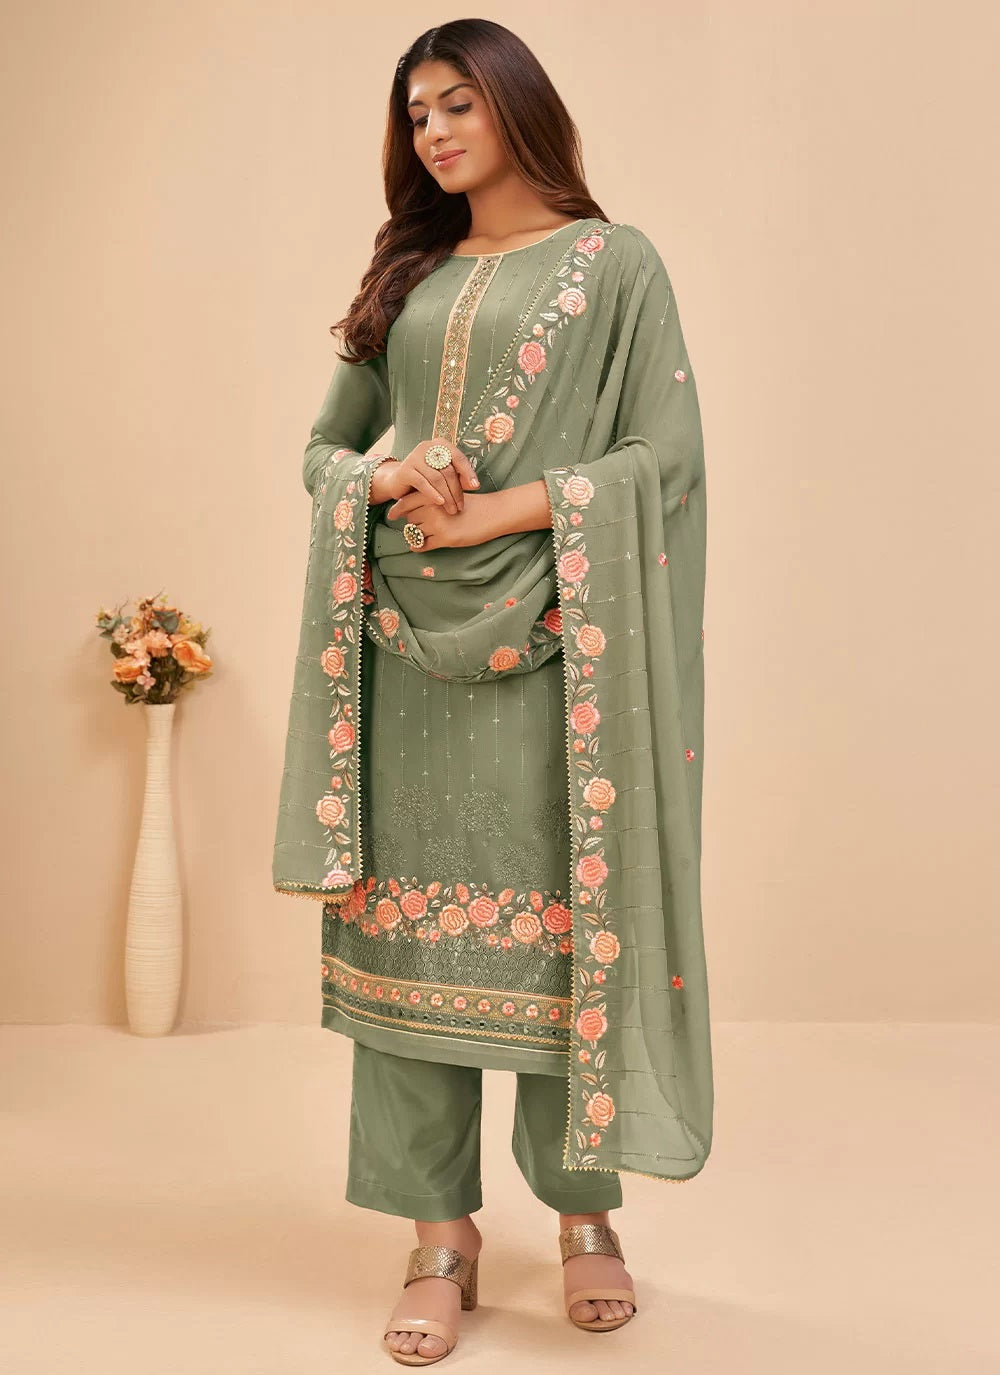 Georgette Trendy Pakistani Suit In Dusty Green